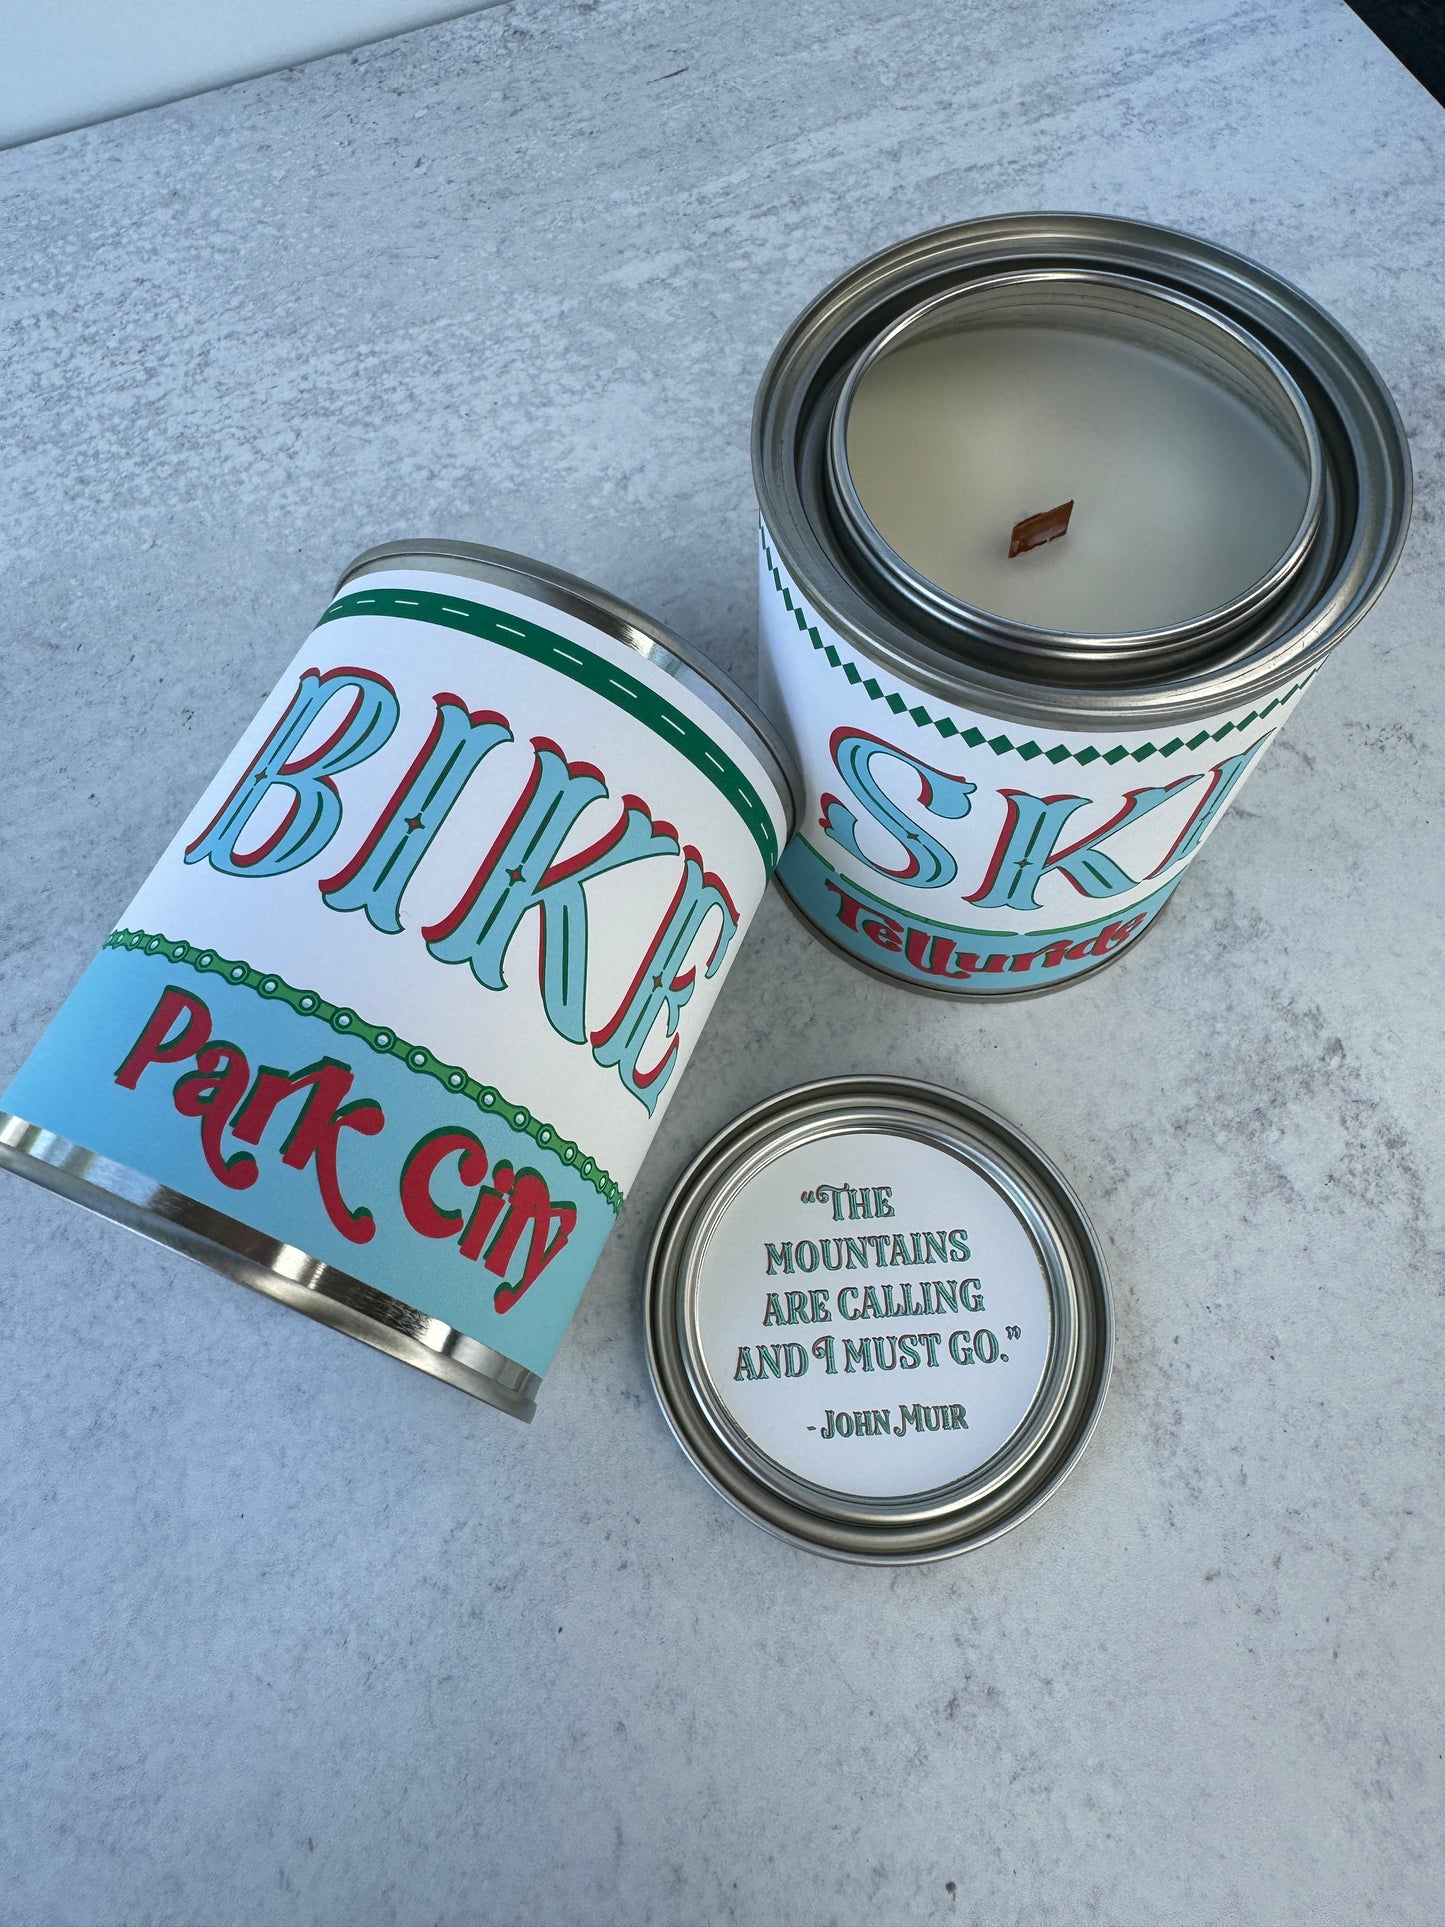 Hike Utah - Paint Tin Candle